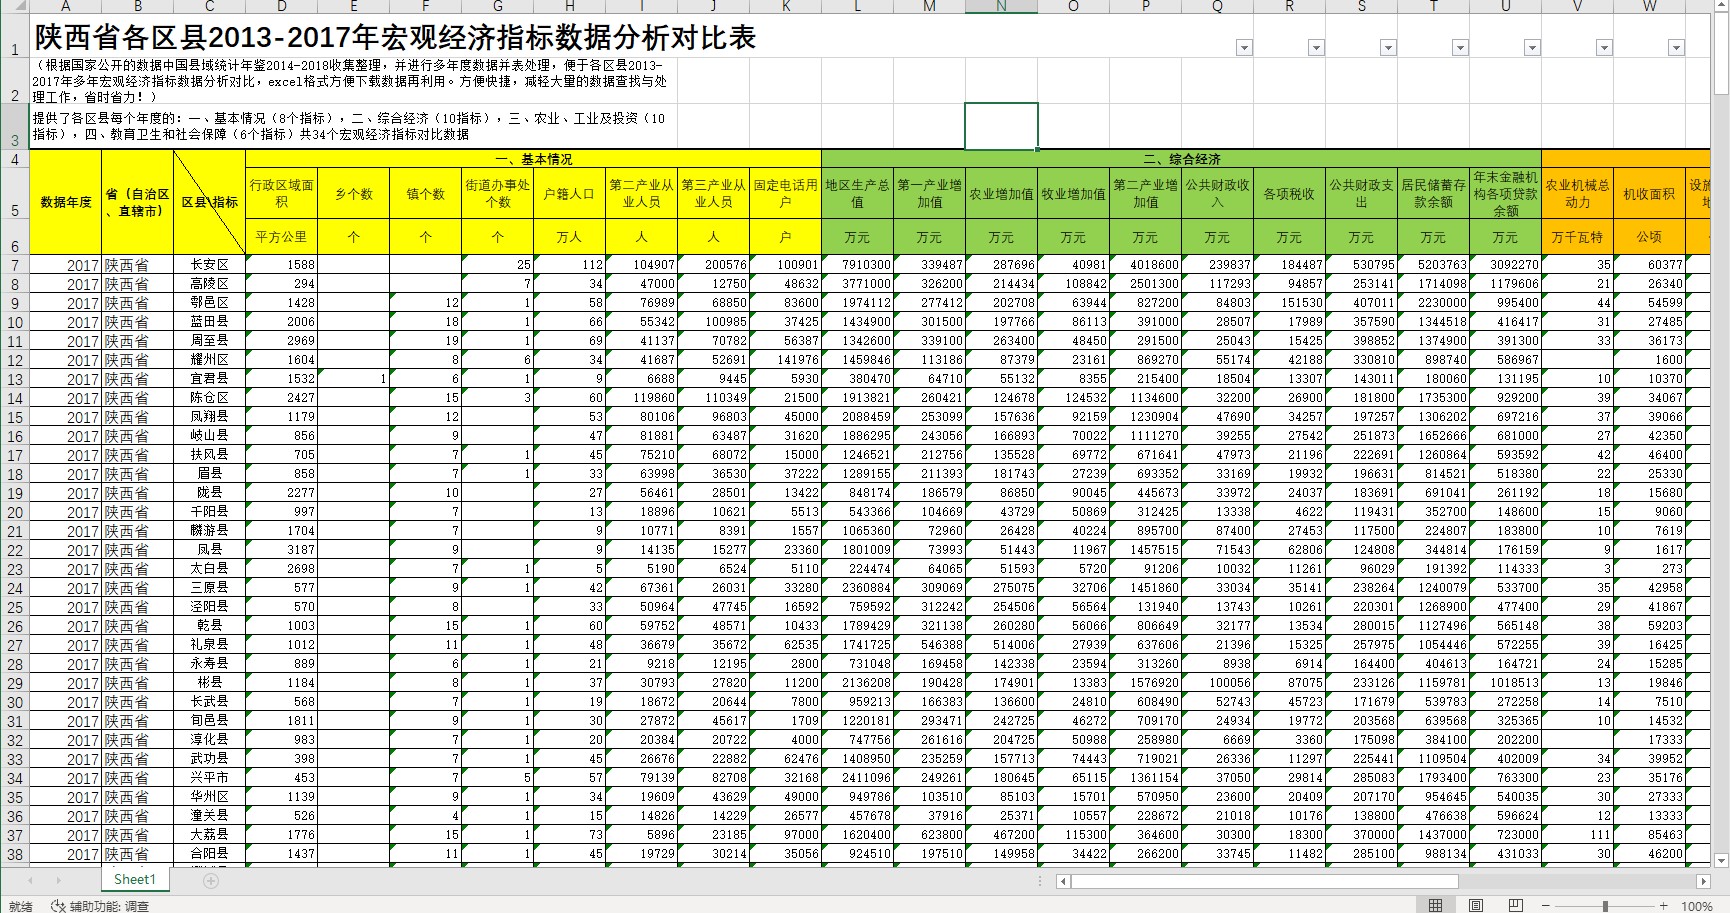 陕西省各区县2013-2017年宏观经济指标数据分析对比表